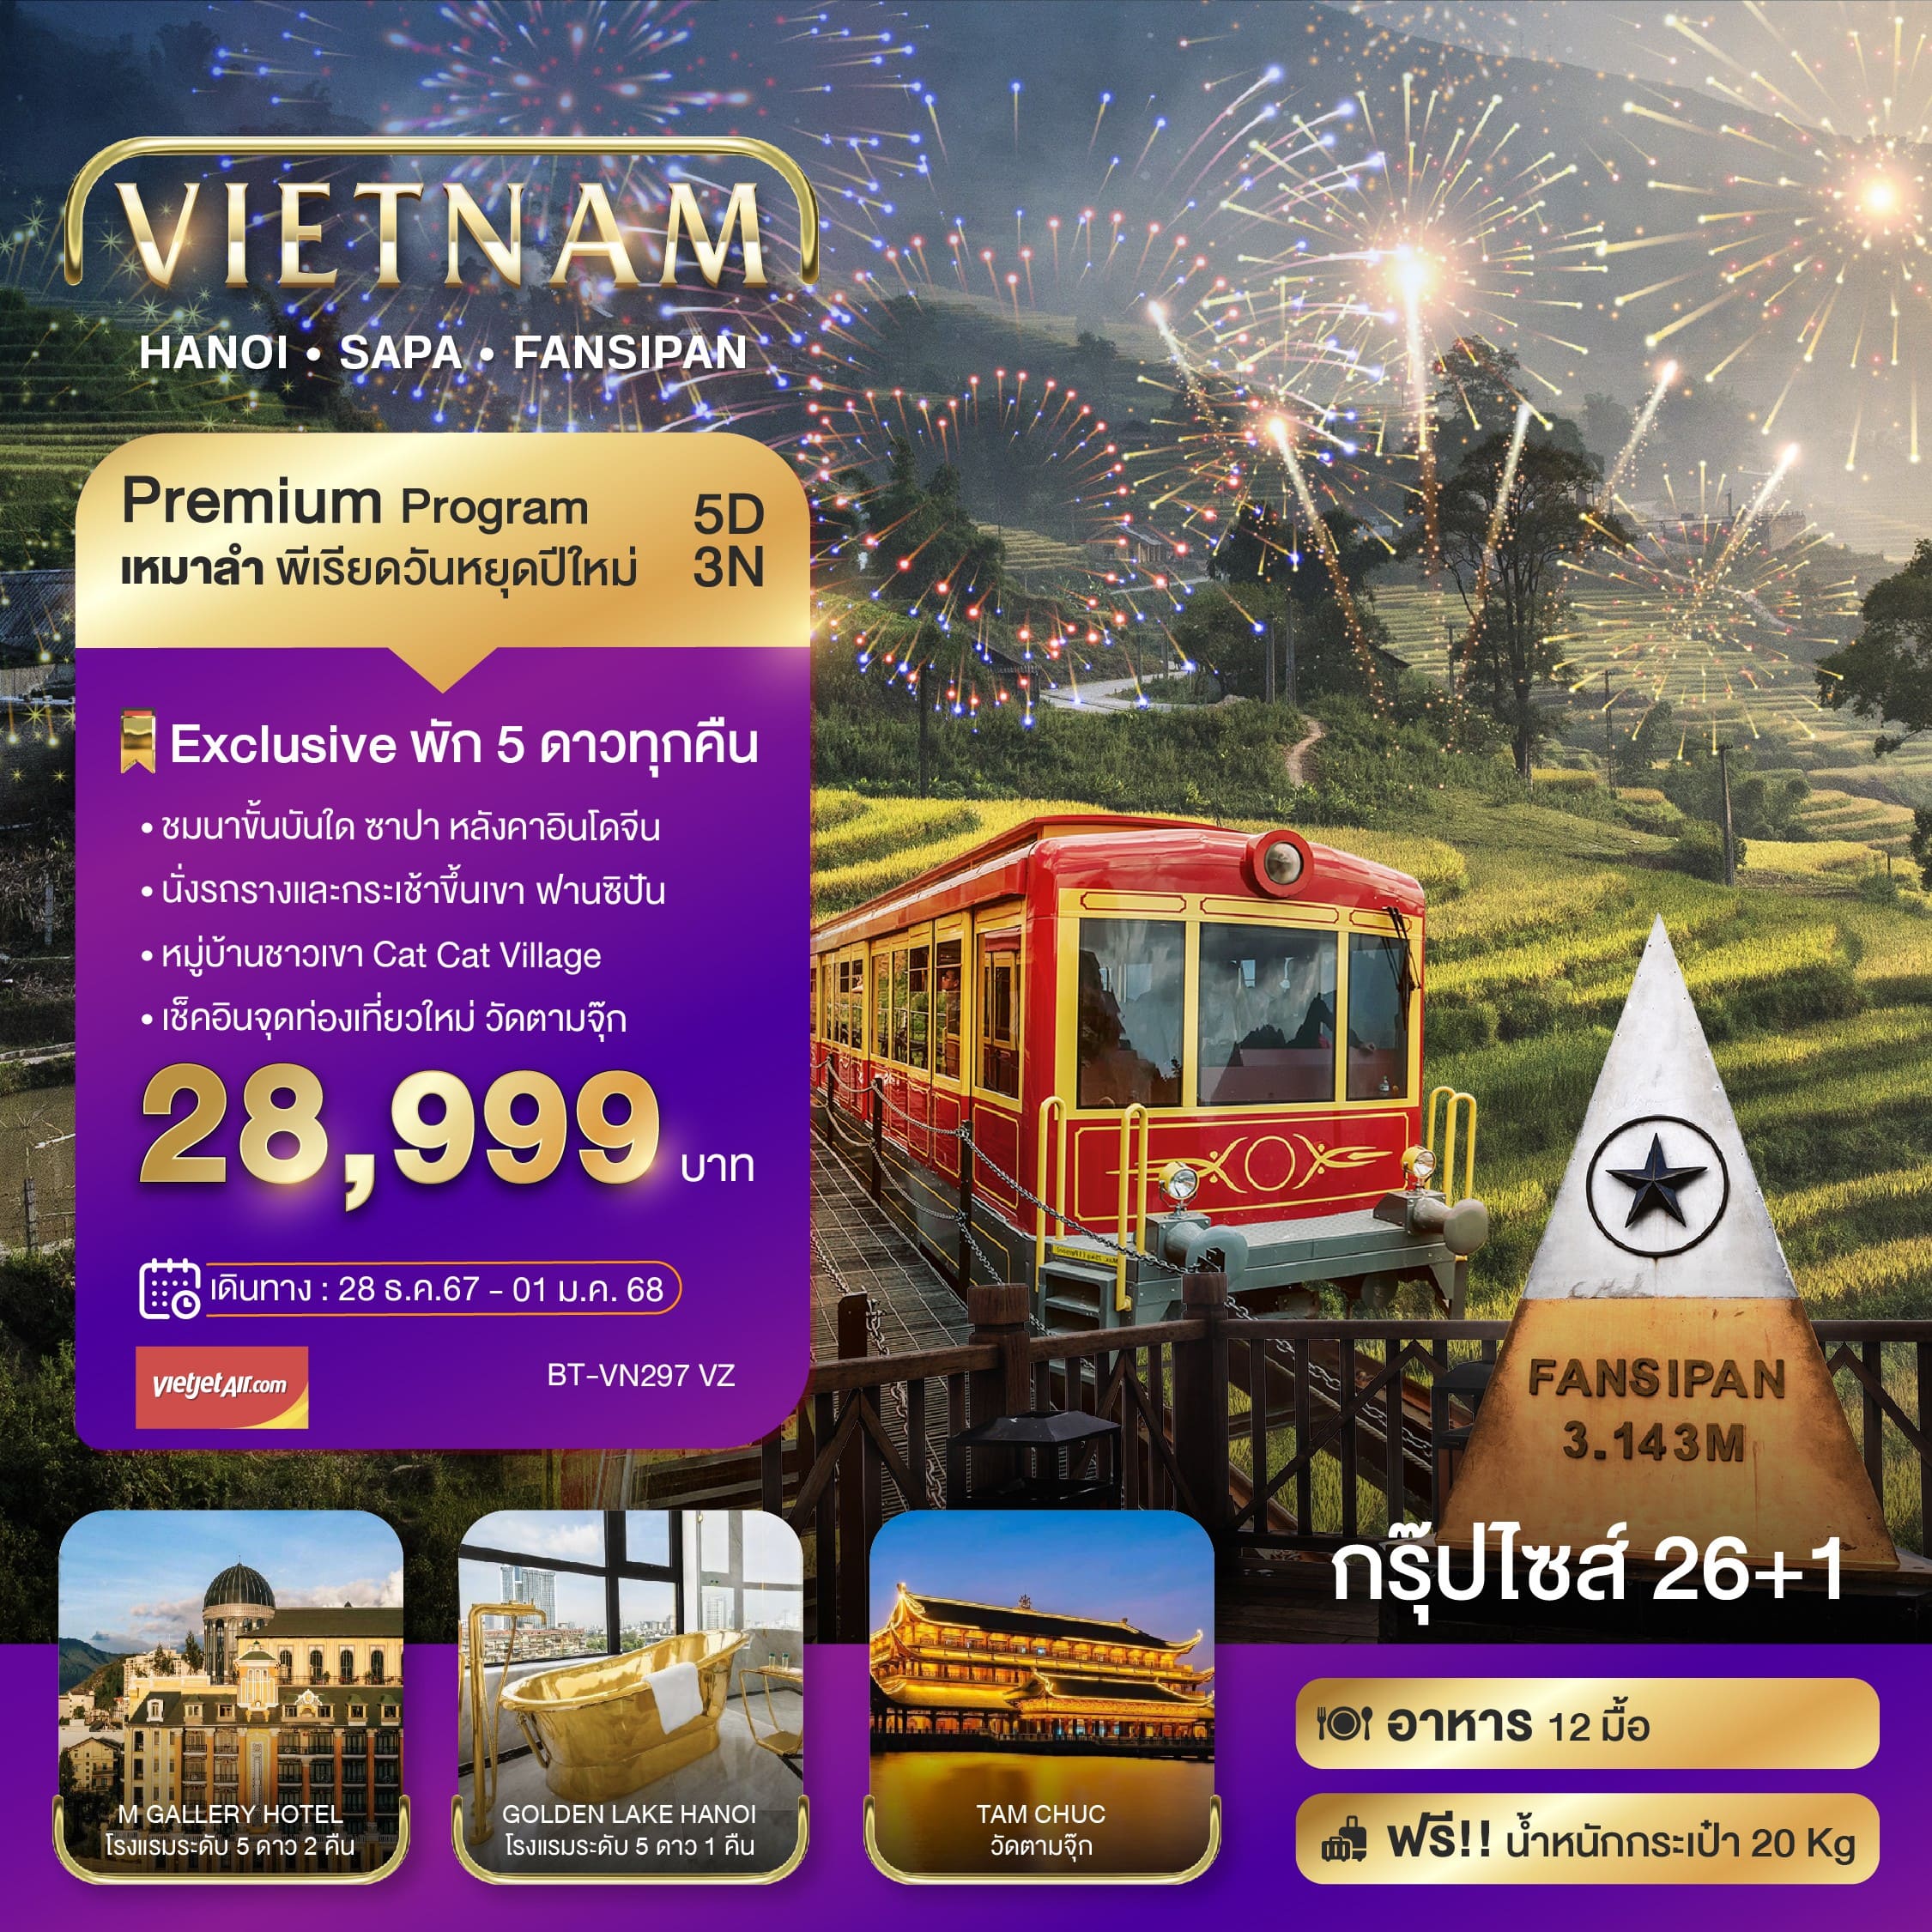 ทัวร์เวียดนาม บินเหมาลำ ฉลองเทศกาลปีใหม่ ซาปา ฮานอย ฟานซีปัน วัดตามจุ๊ก (พักหรู 5 ดาว) 5วัน 3คืน (VZ)